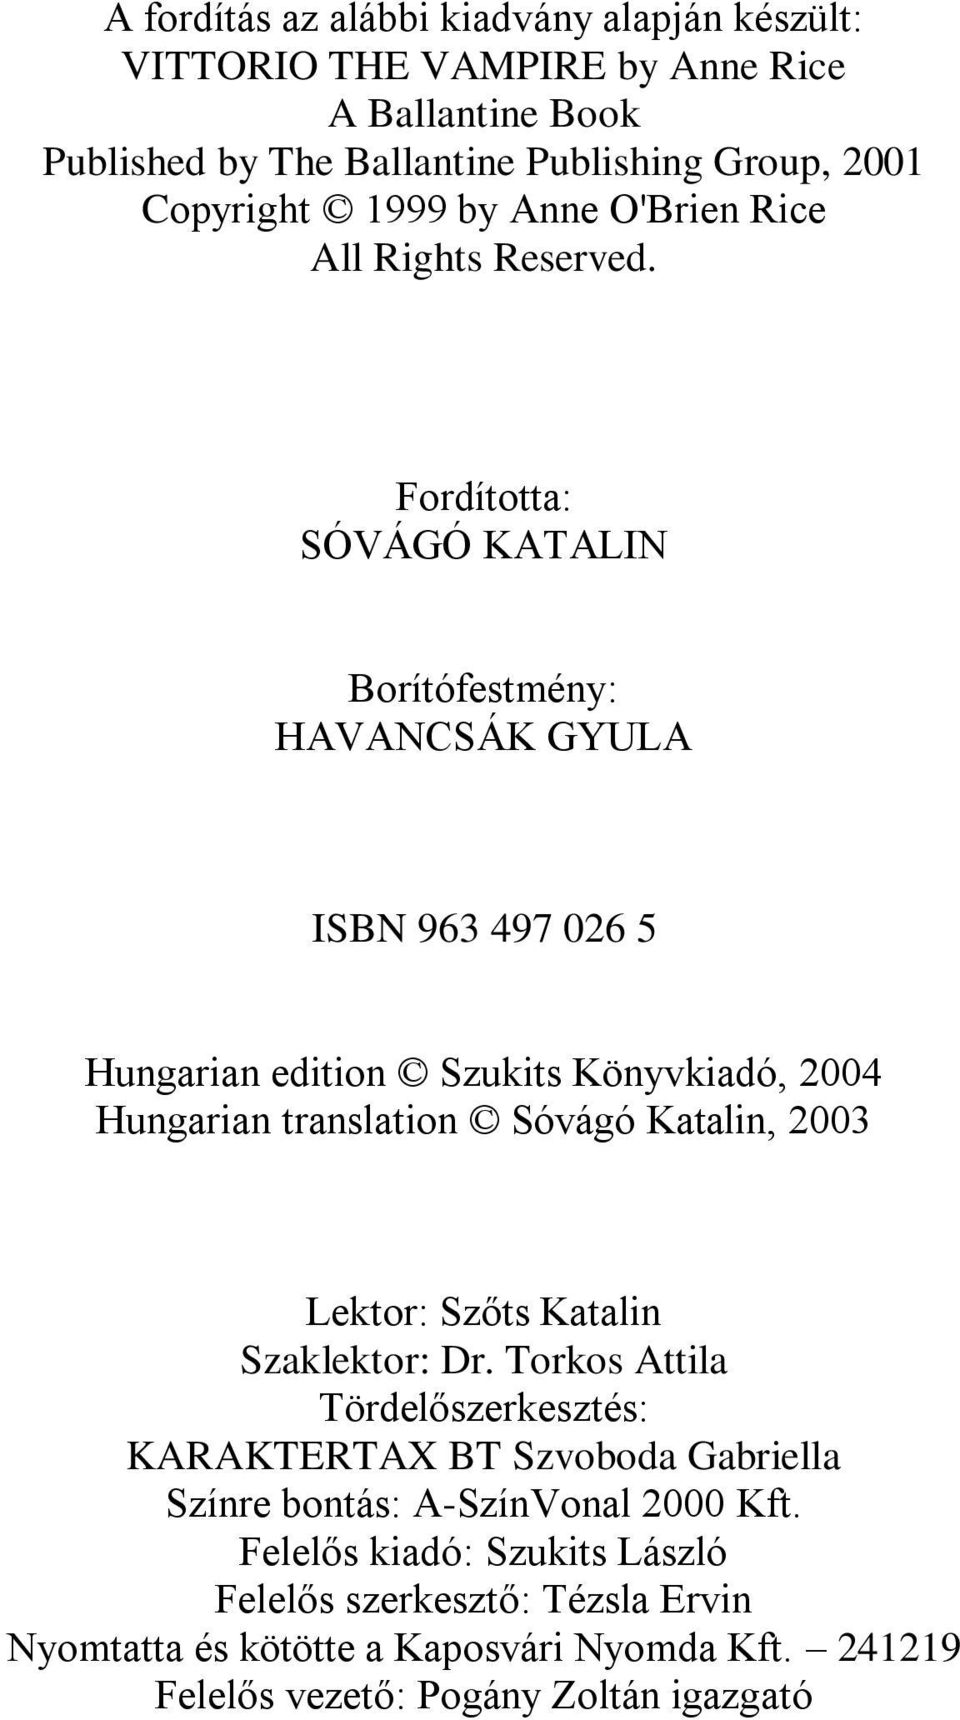 Fordította: SÓVÁGÓ KATALIN Borítófestmény: HAVANCSÁK GYULA ISBN 963 497 026 5 Hungarian edition Szukits Könyvkiadó, 2004 Hungarian translation Sóvágó Katalin, 2003